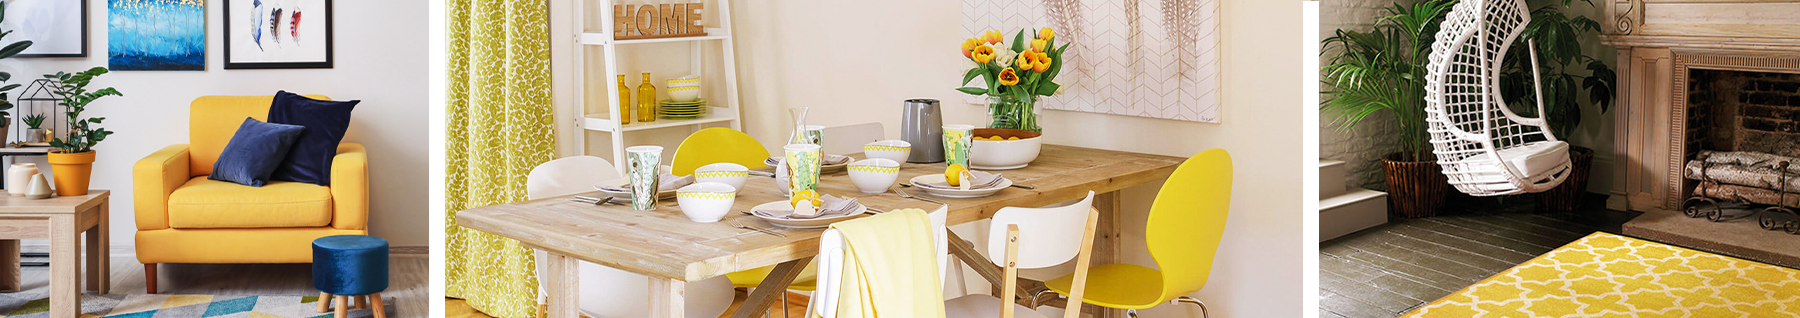 Fauteuil jaune en tissu, table à manger en bois, fauteuil suspendu avec tapis jaune à motif géométrique 